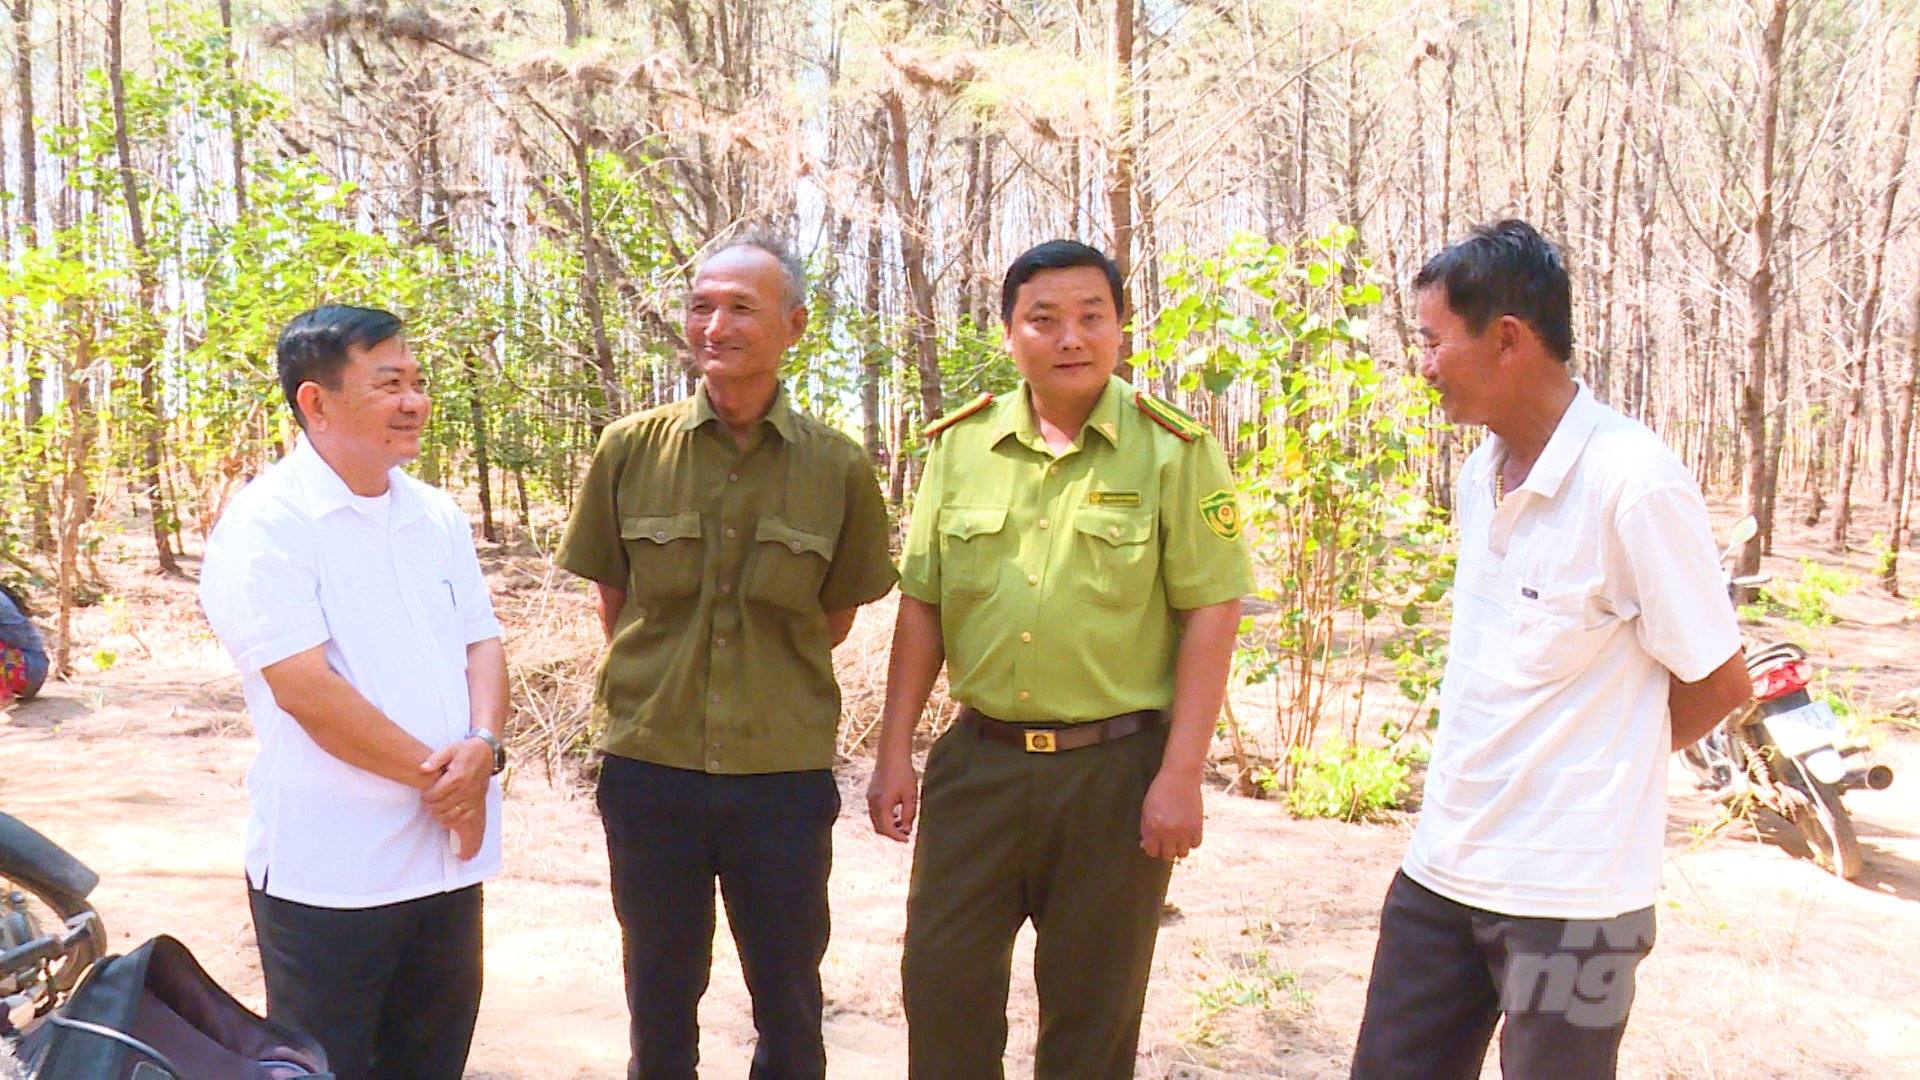 Công tác tuần tra, kiểm soát cùng với những hoạt động tuyên truyền người dân bảo vệ rừng được tổ chức thường xuyên. Ảnh: Hồ Thảo.